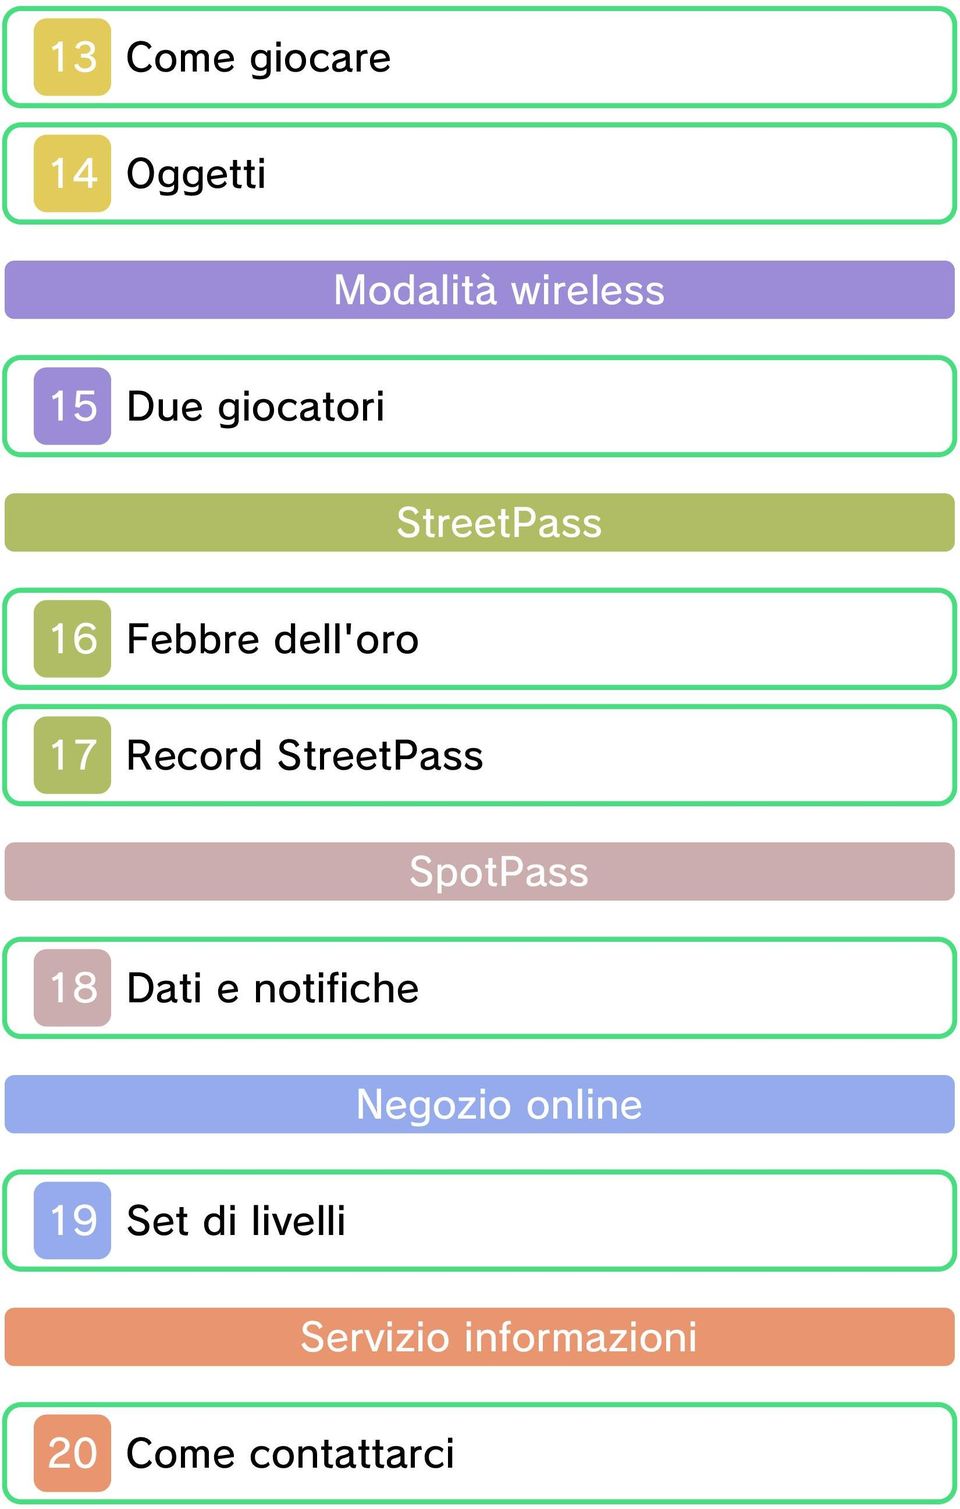 StreetPass SpotPass 18 Dati e notifiche Negozio